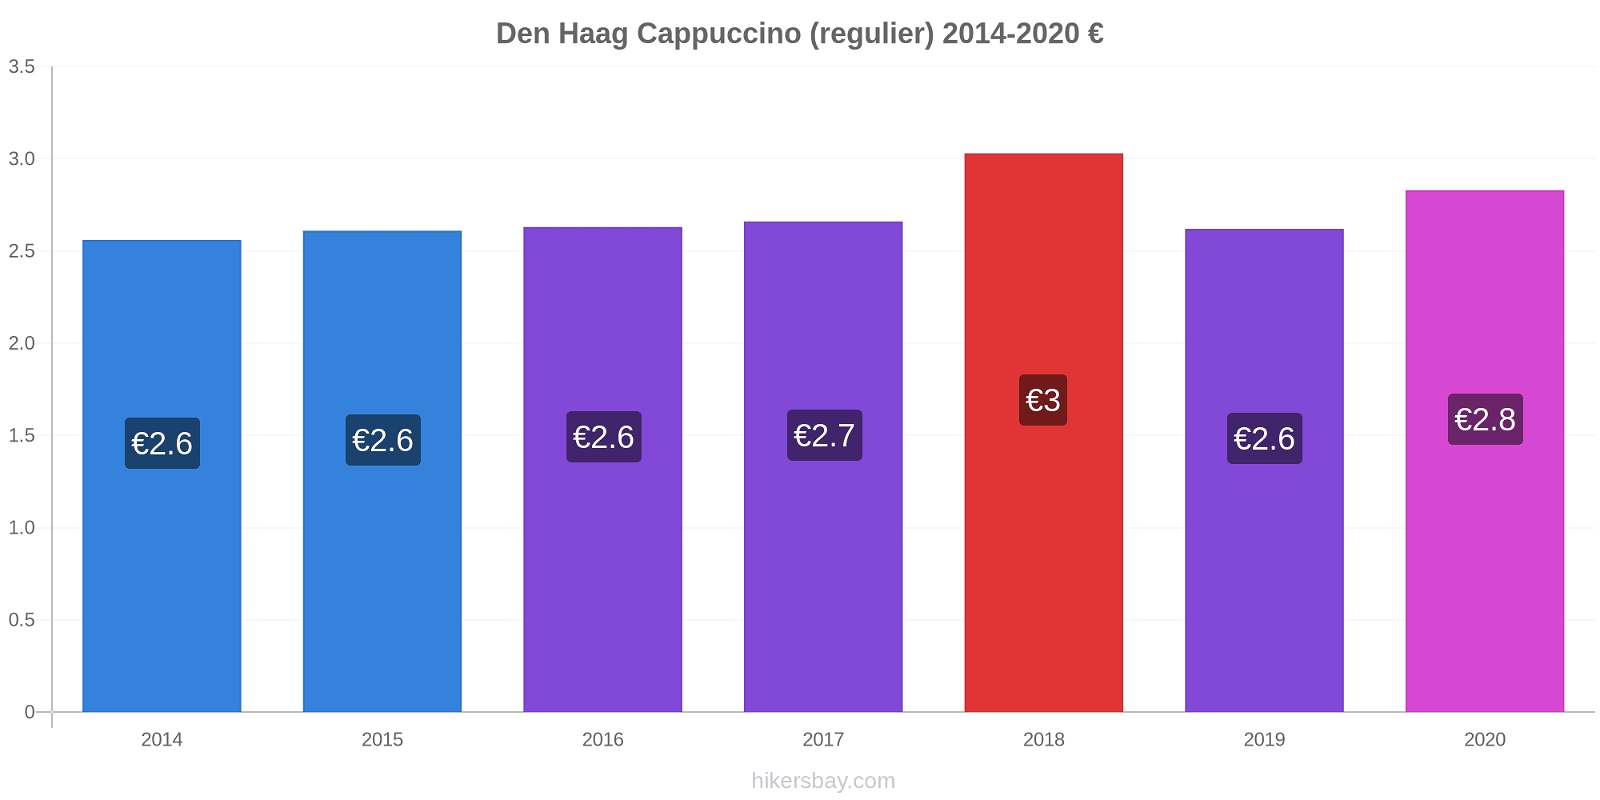 Den Haag prijswijzigingen Cappuccino (regelmatige) hikersbay.com